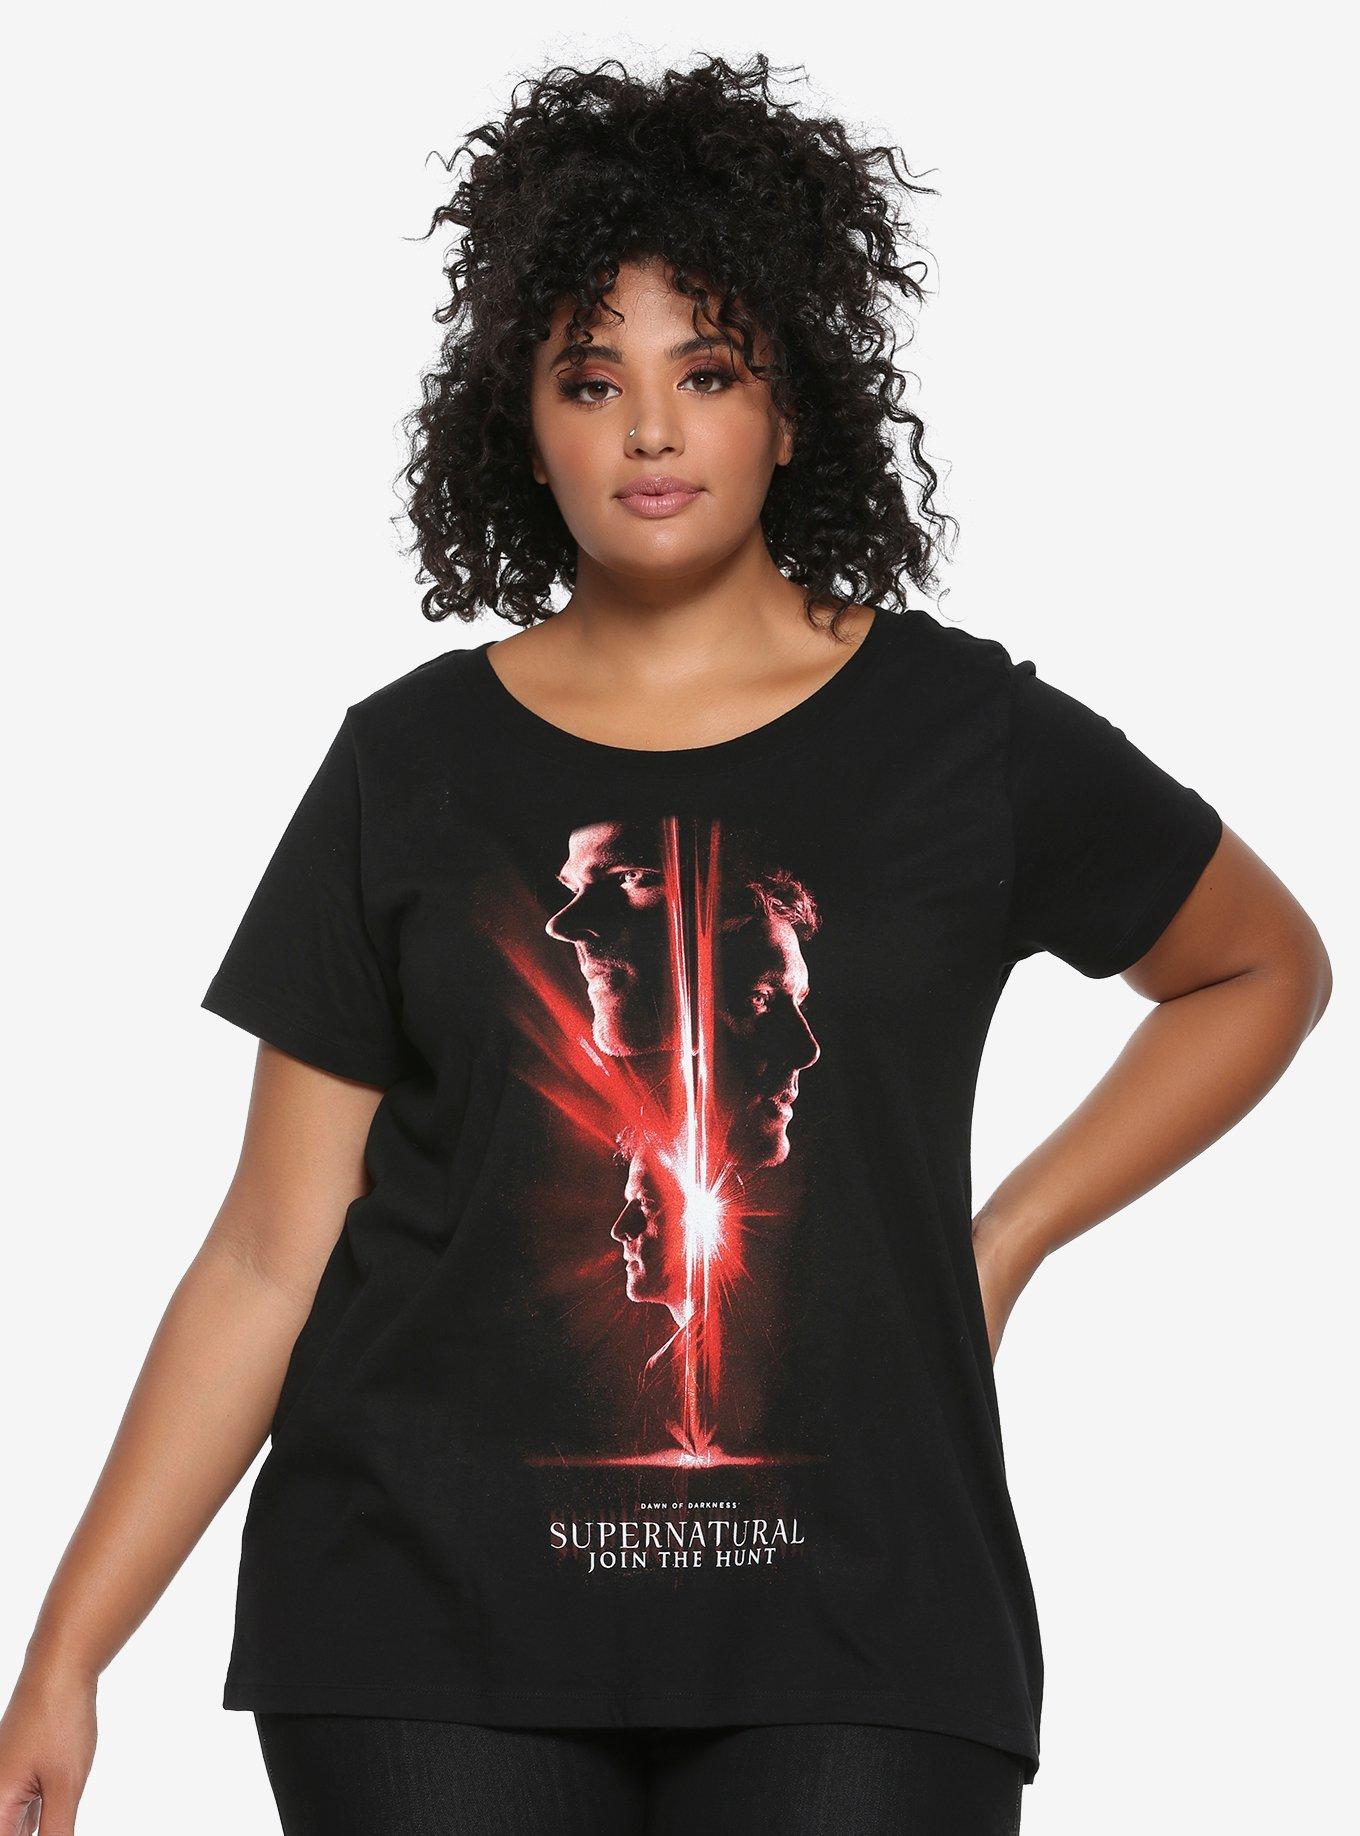 Supernatural Season 13 Poster Girls T-Shirt Plus Size, RED, hi-res